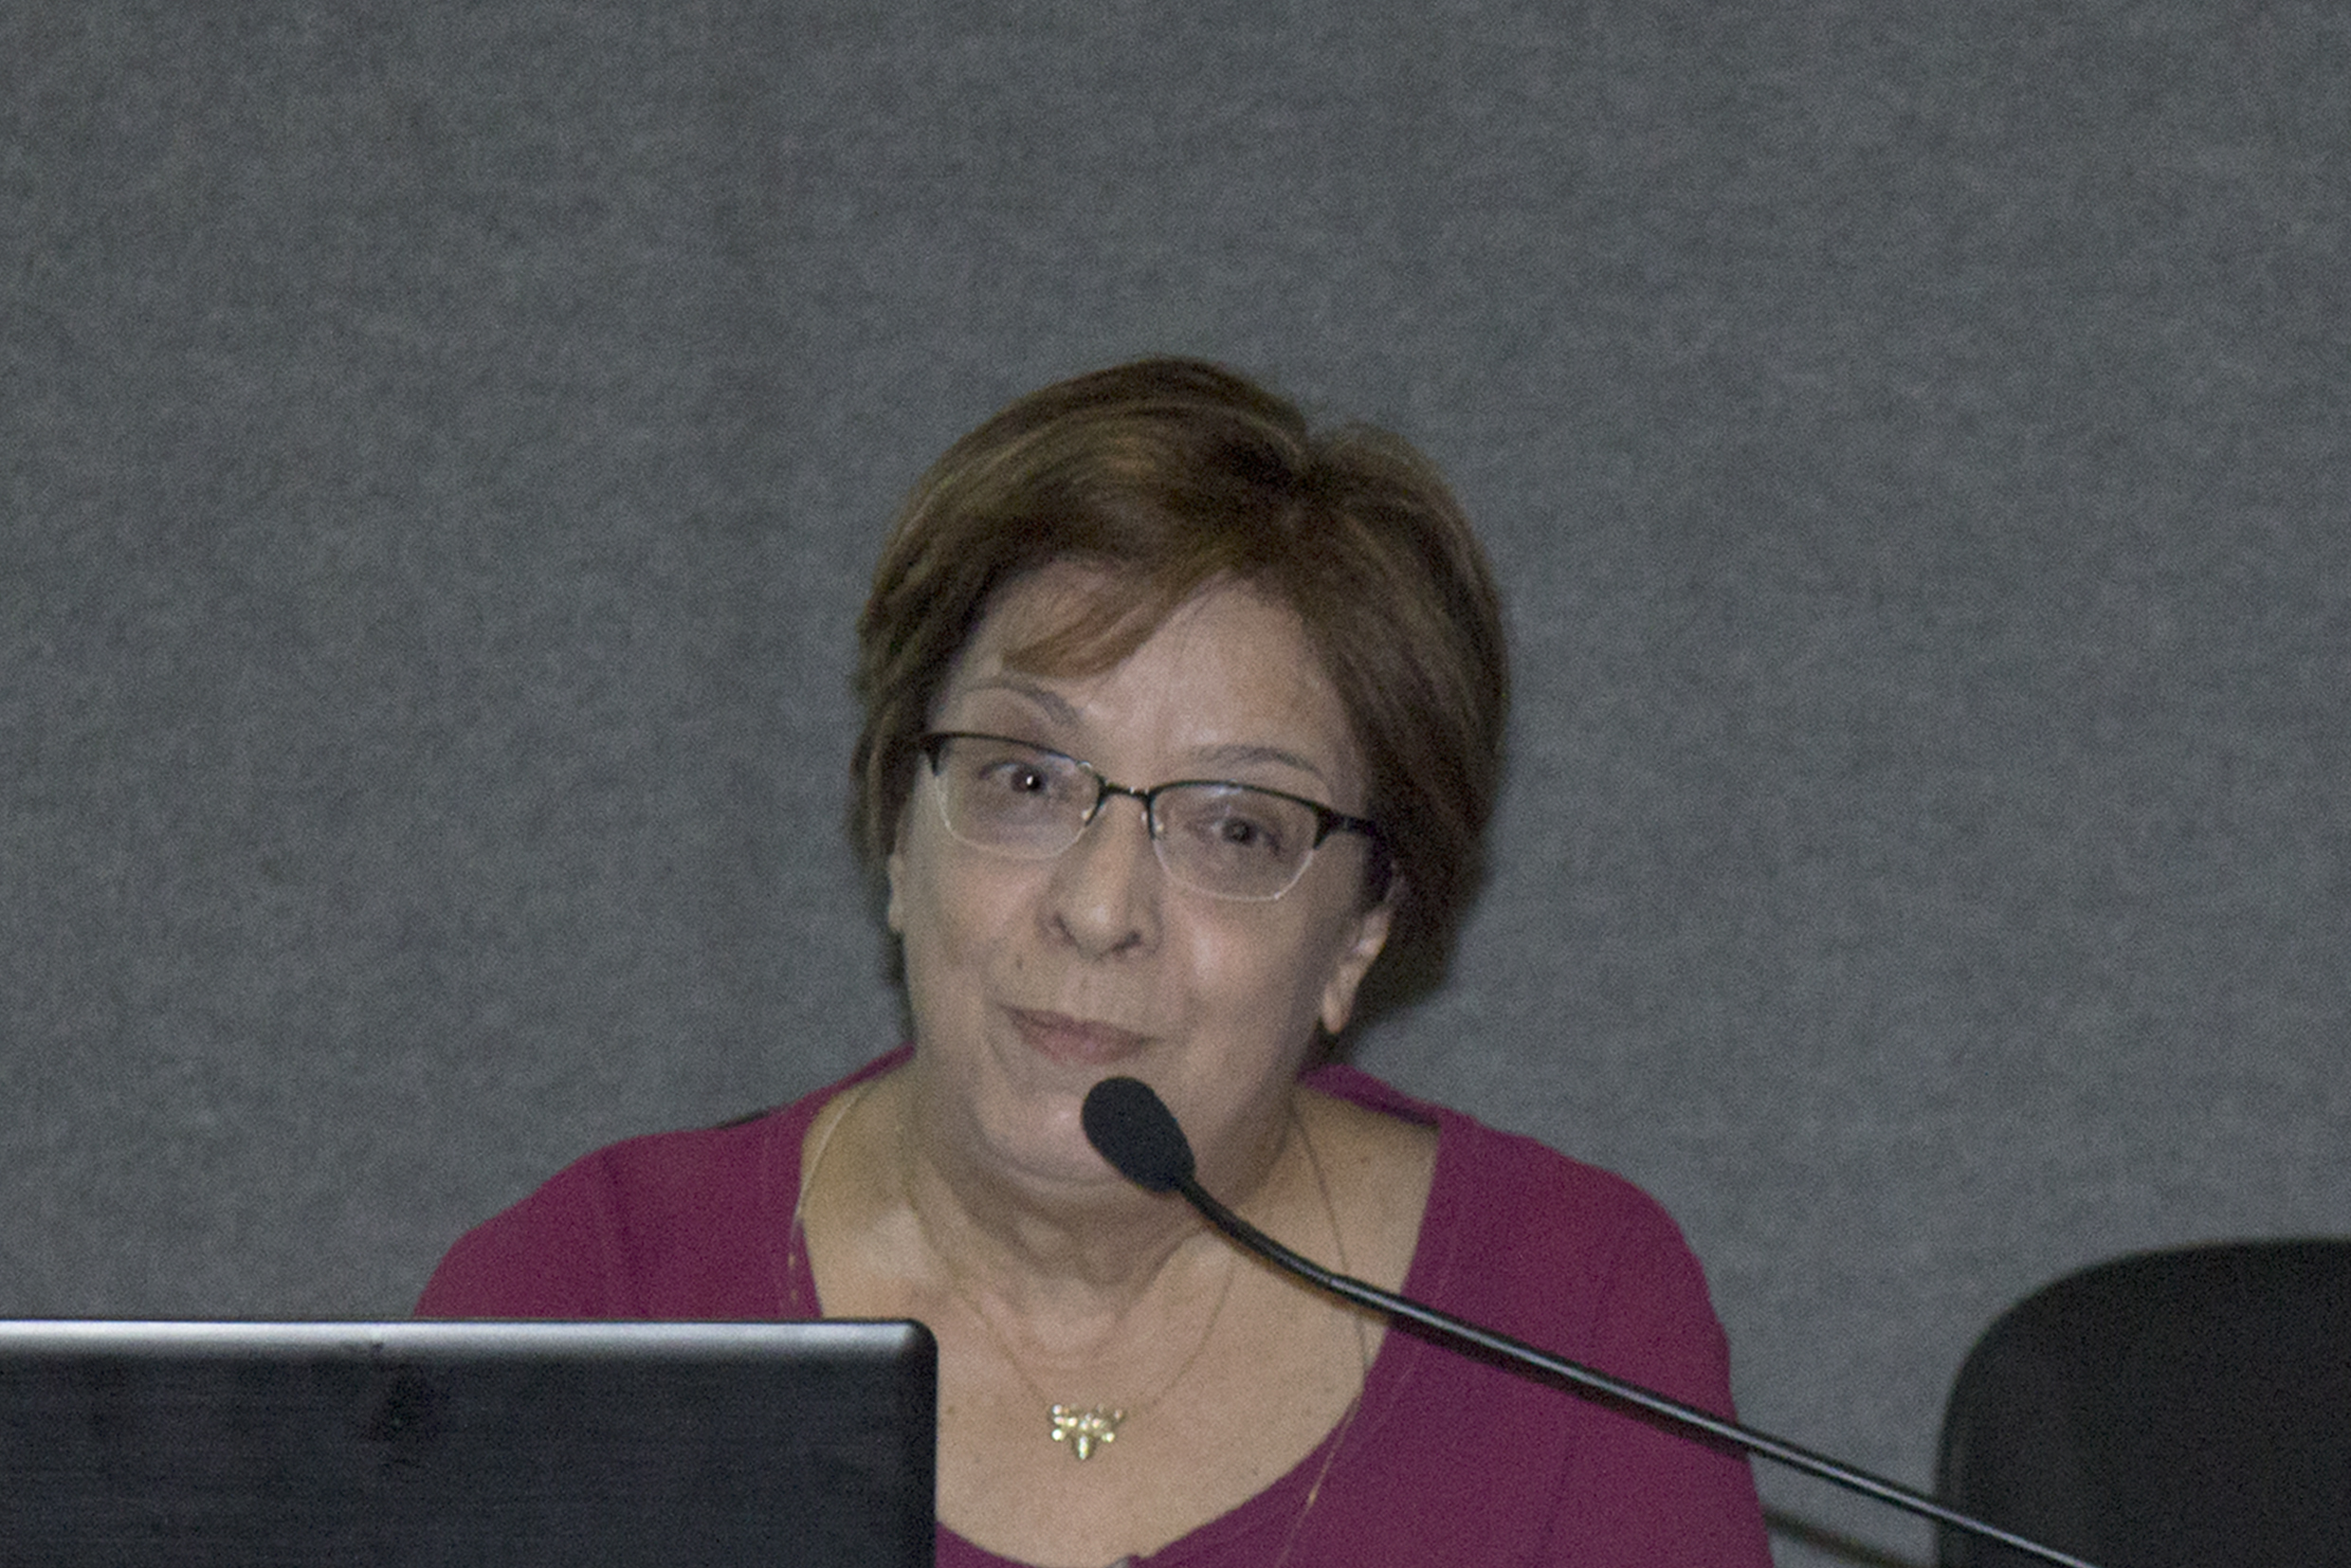 Conferência com Vera Lucia Imperatiz-Fonseca - 25 de abril de 2015